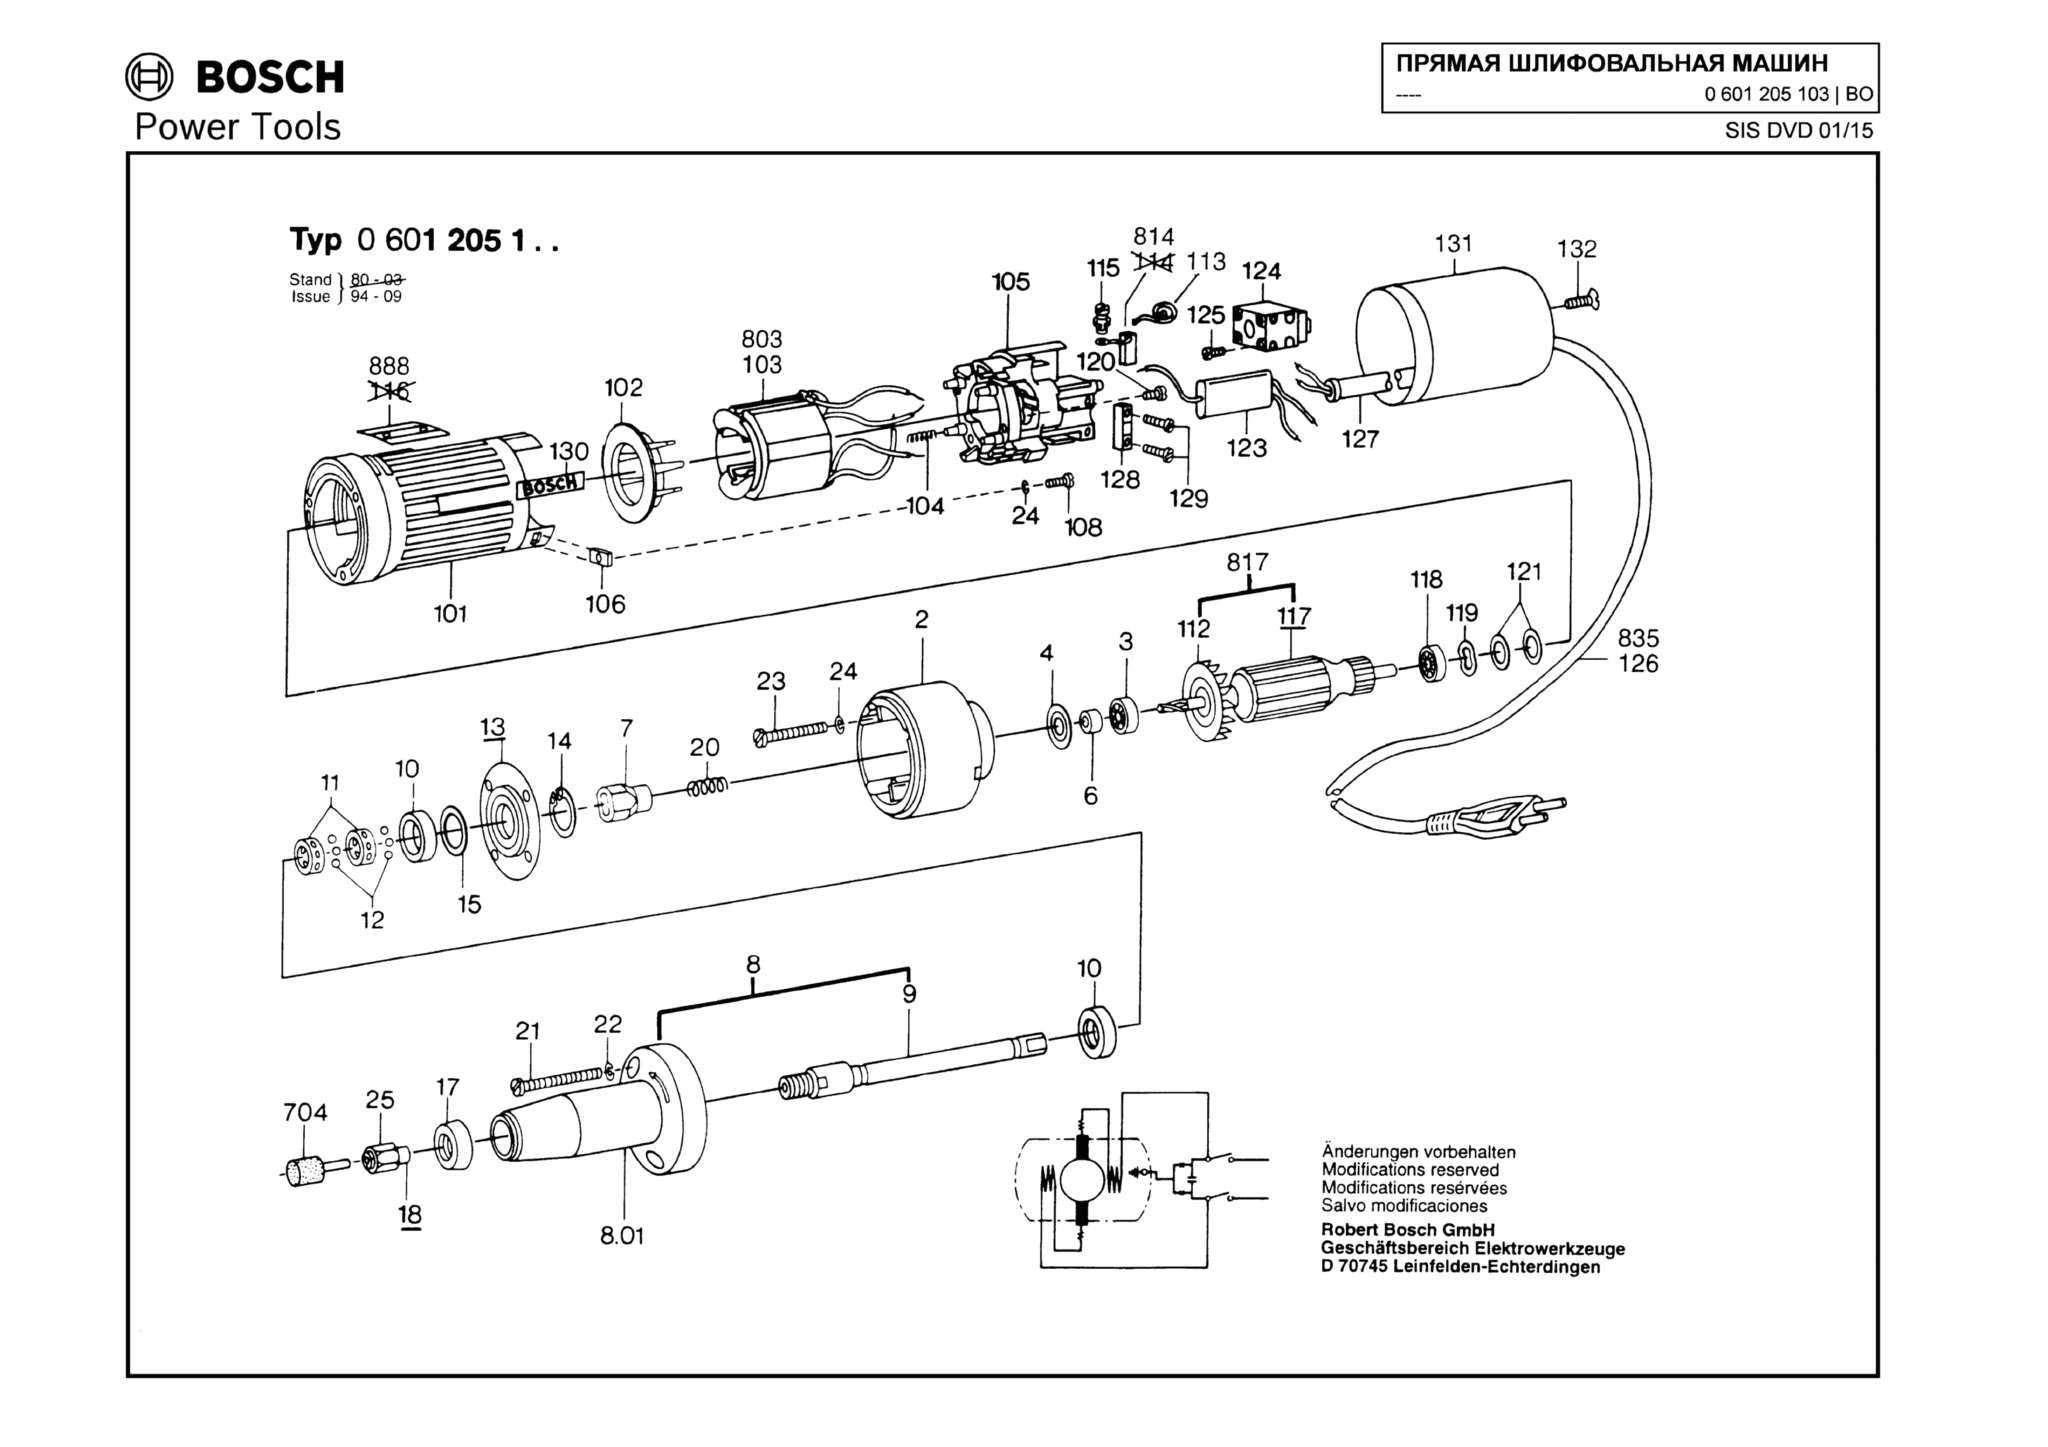 Запчасти, схема и деталировка Bosch (ТИП 0601205103)